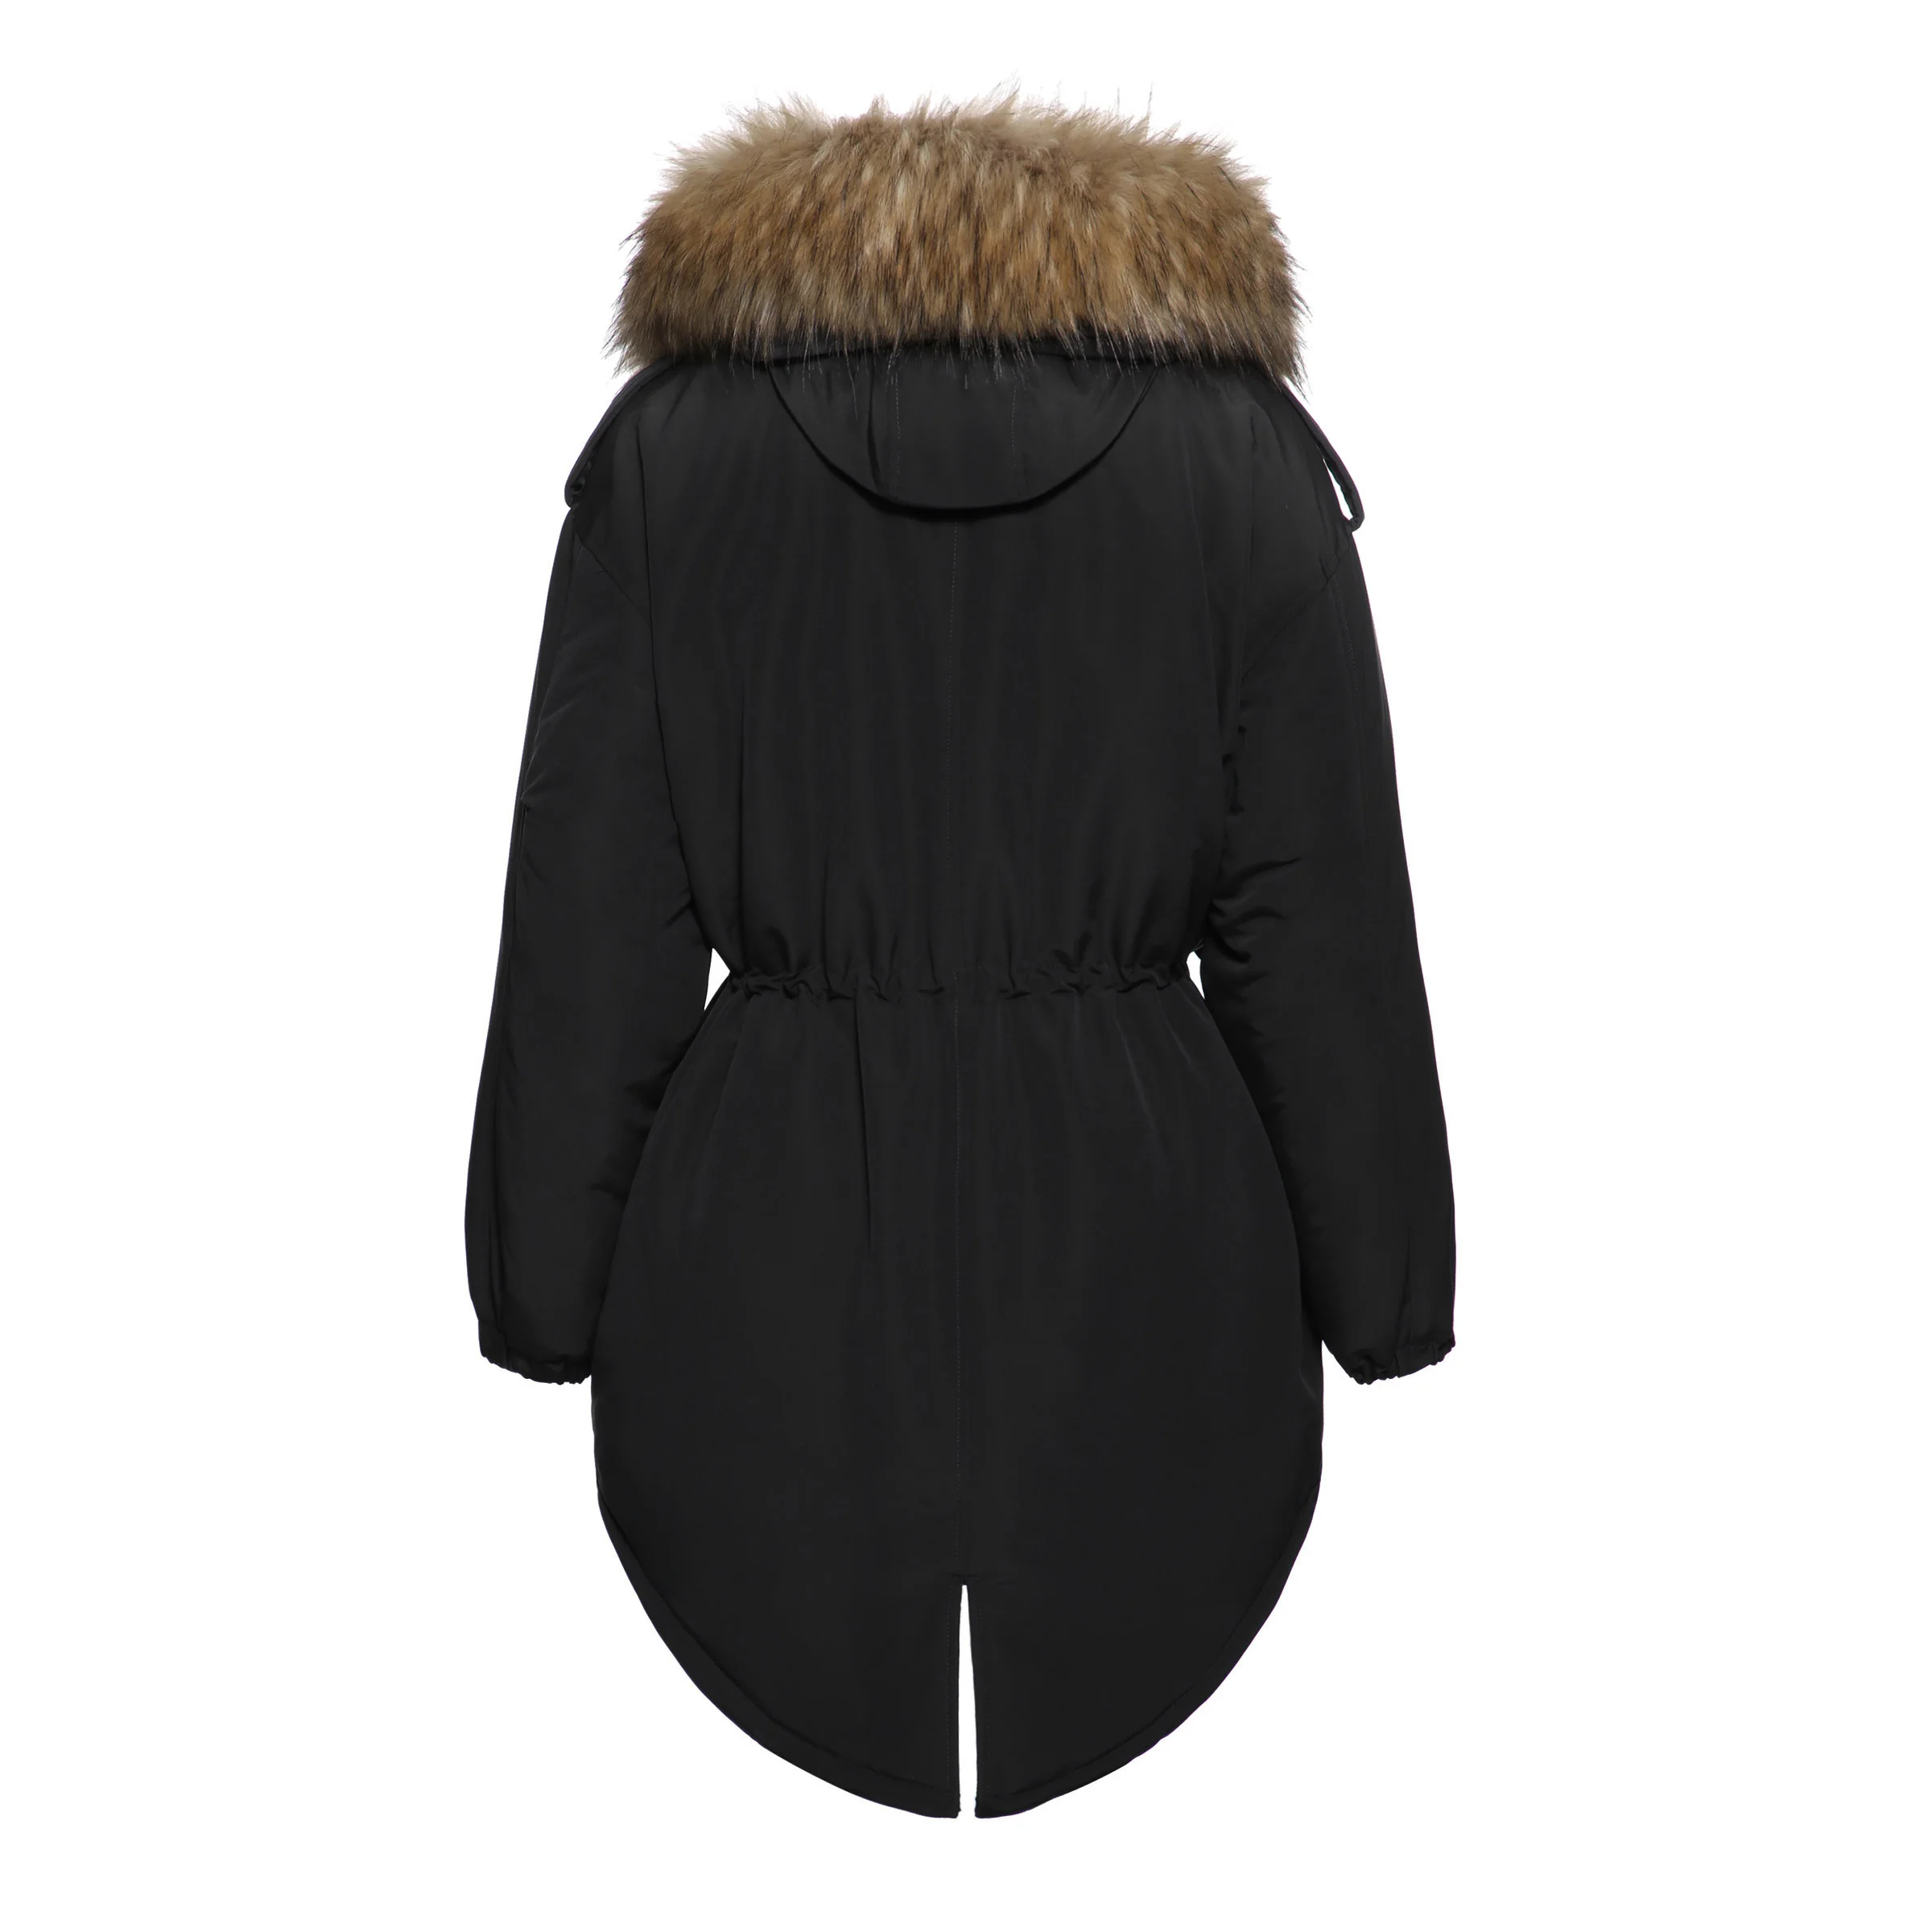 2018 Новая модная зимняя куртка для женщин теплое пальто искусственный мех хлопок флисовое женский длинный с капюшоном парки Толс